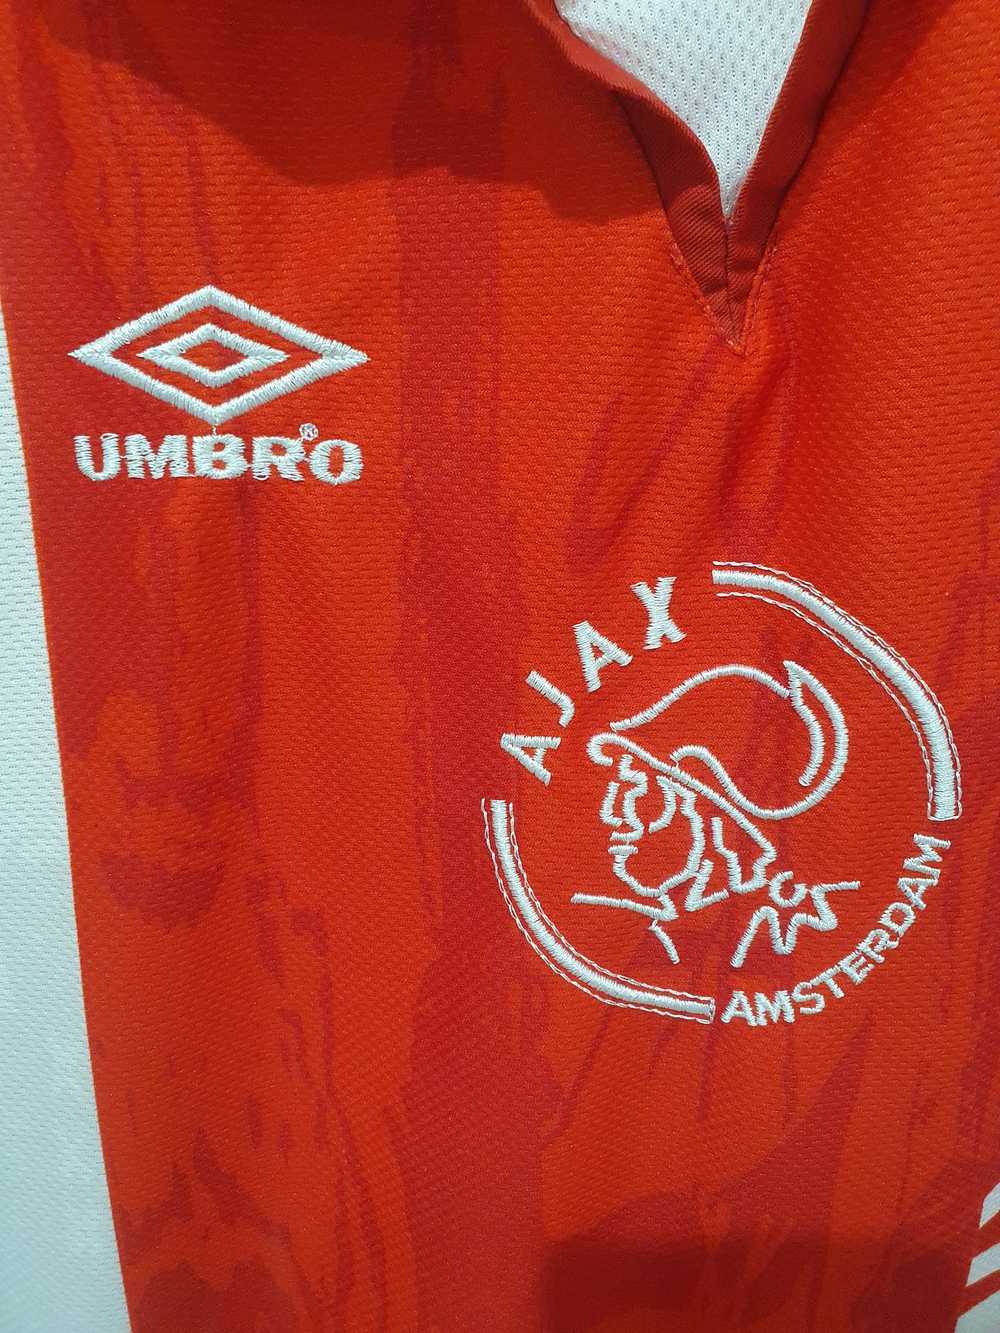 Jersey × Soccer Jersey × Sportswear AJAX AMSTERDA… - image 5